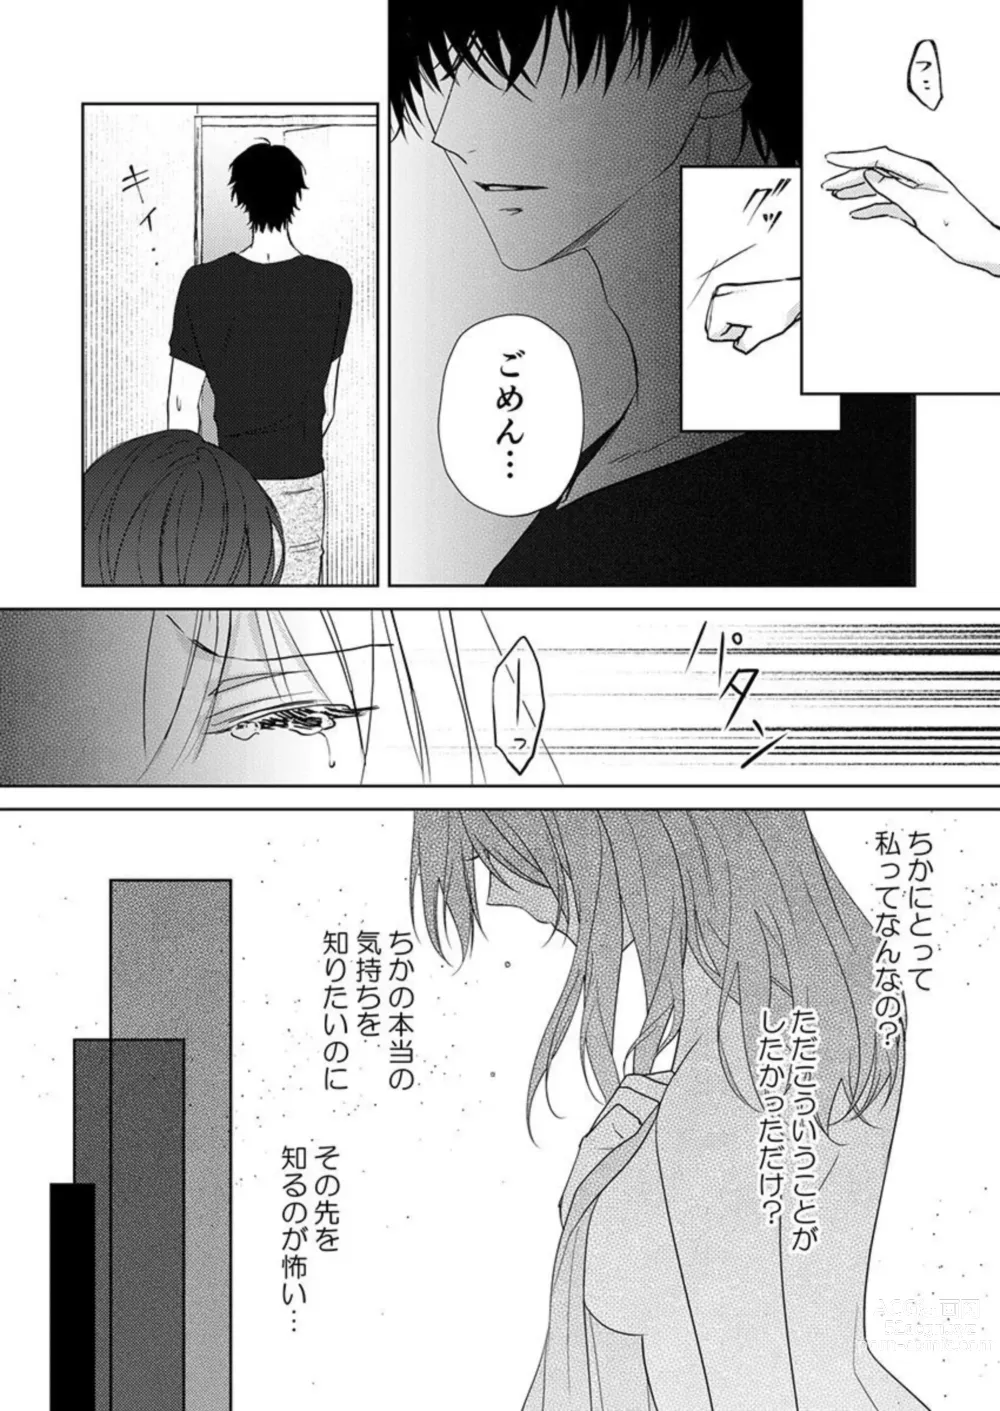 Page 46 of manga Osananajimi wa Mou Yameta.